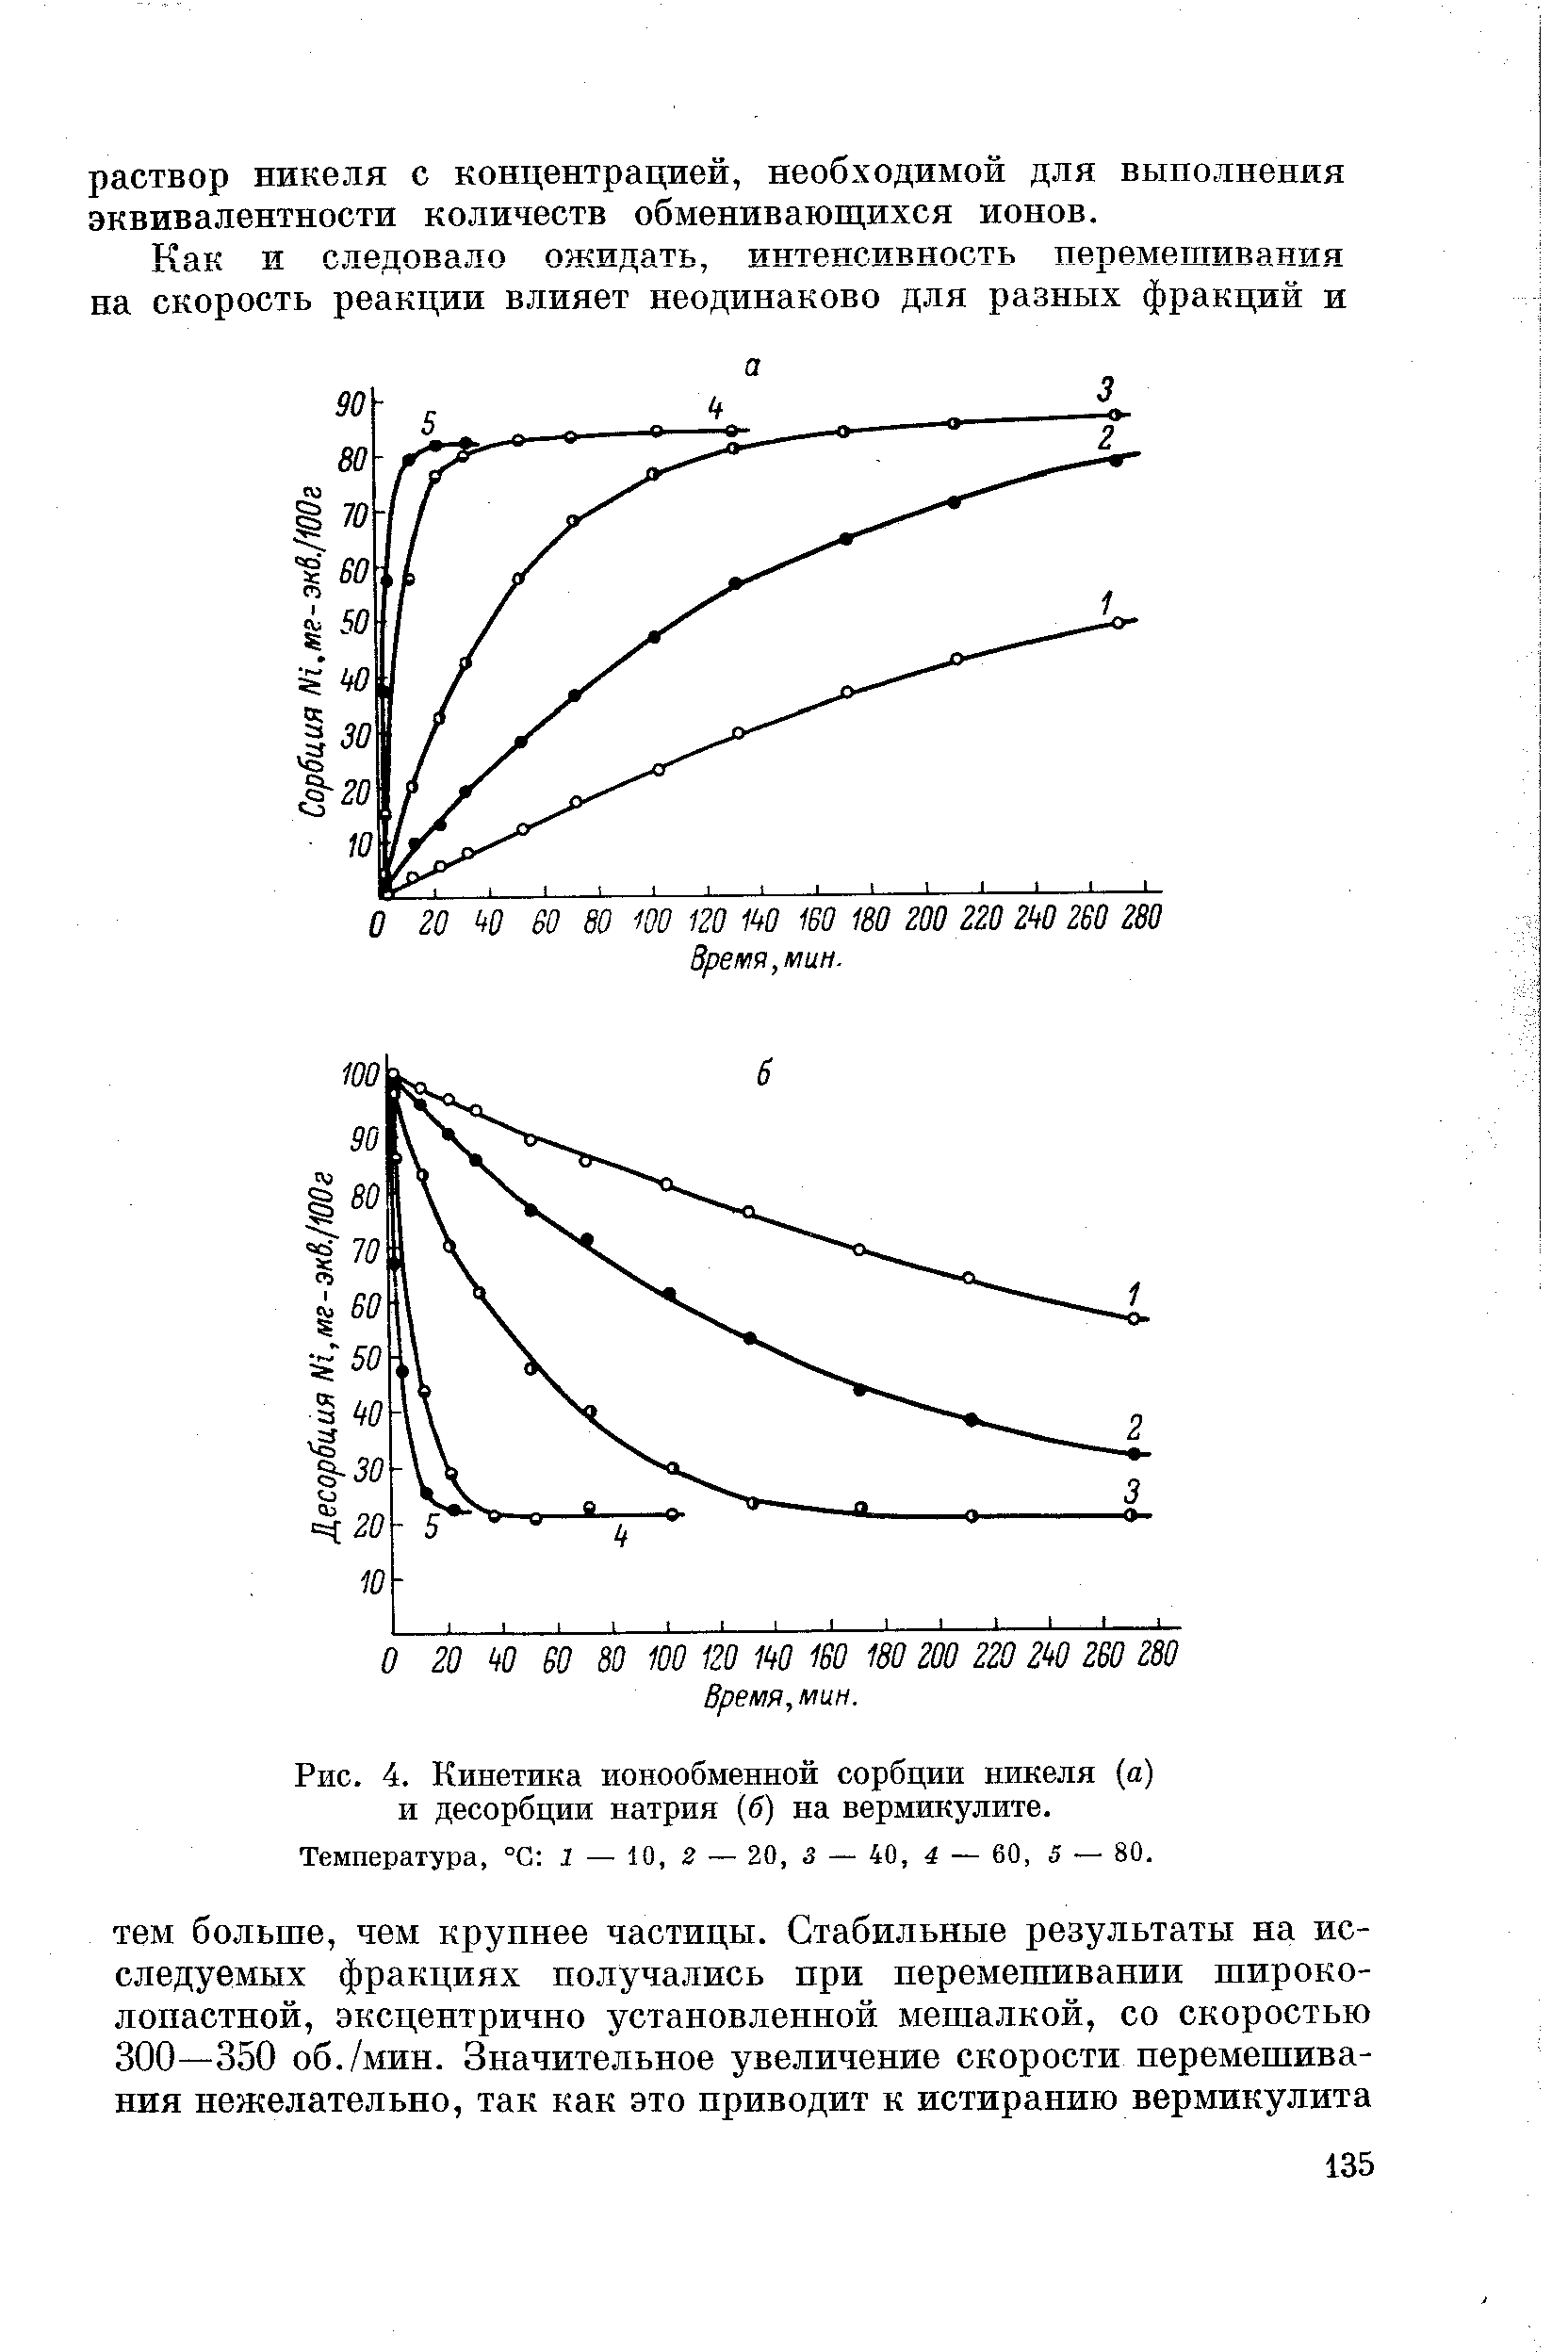 Рис. 4. Кинетика ионообменной сорбции никеля (а) и десорбции натрия (б) на вермикулите.
